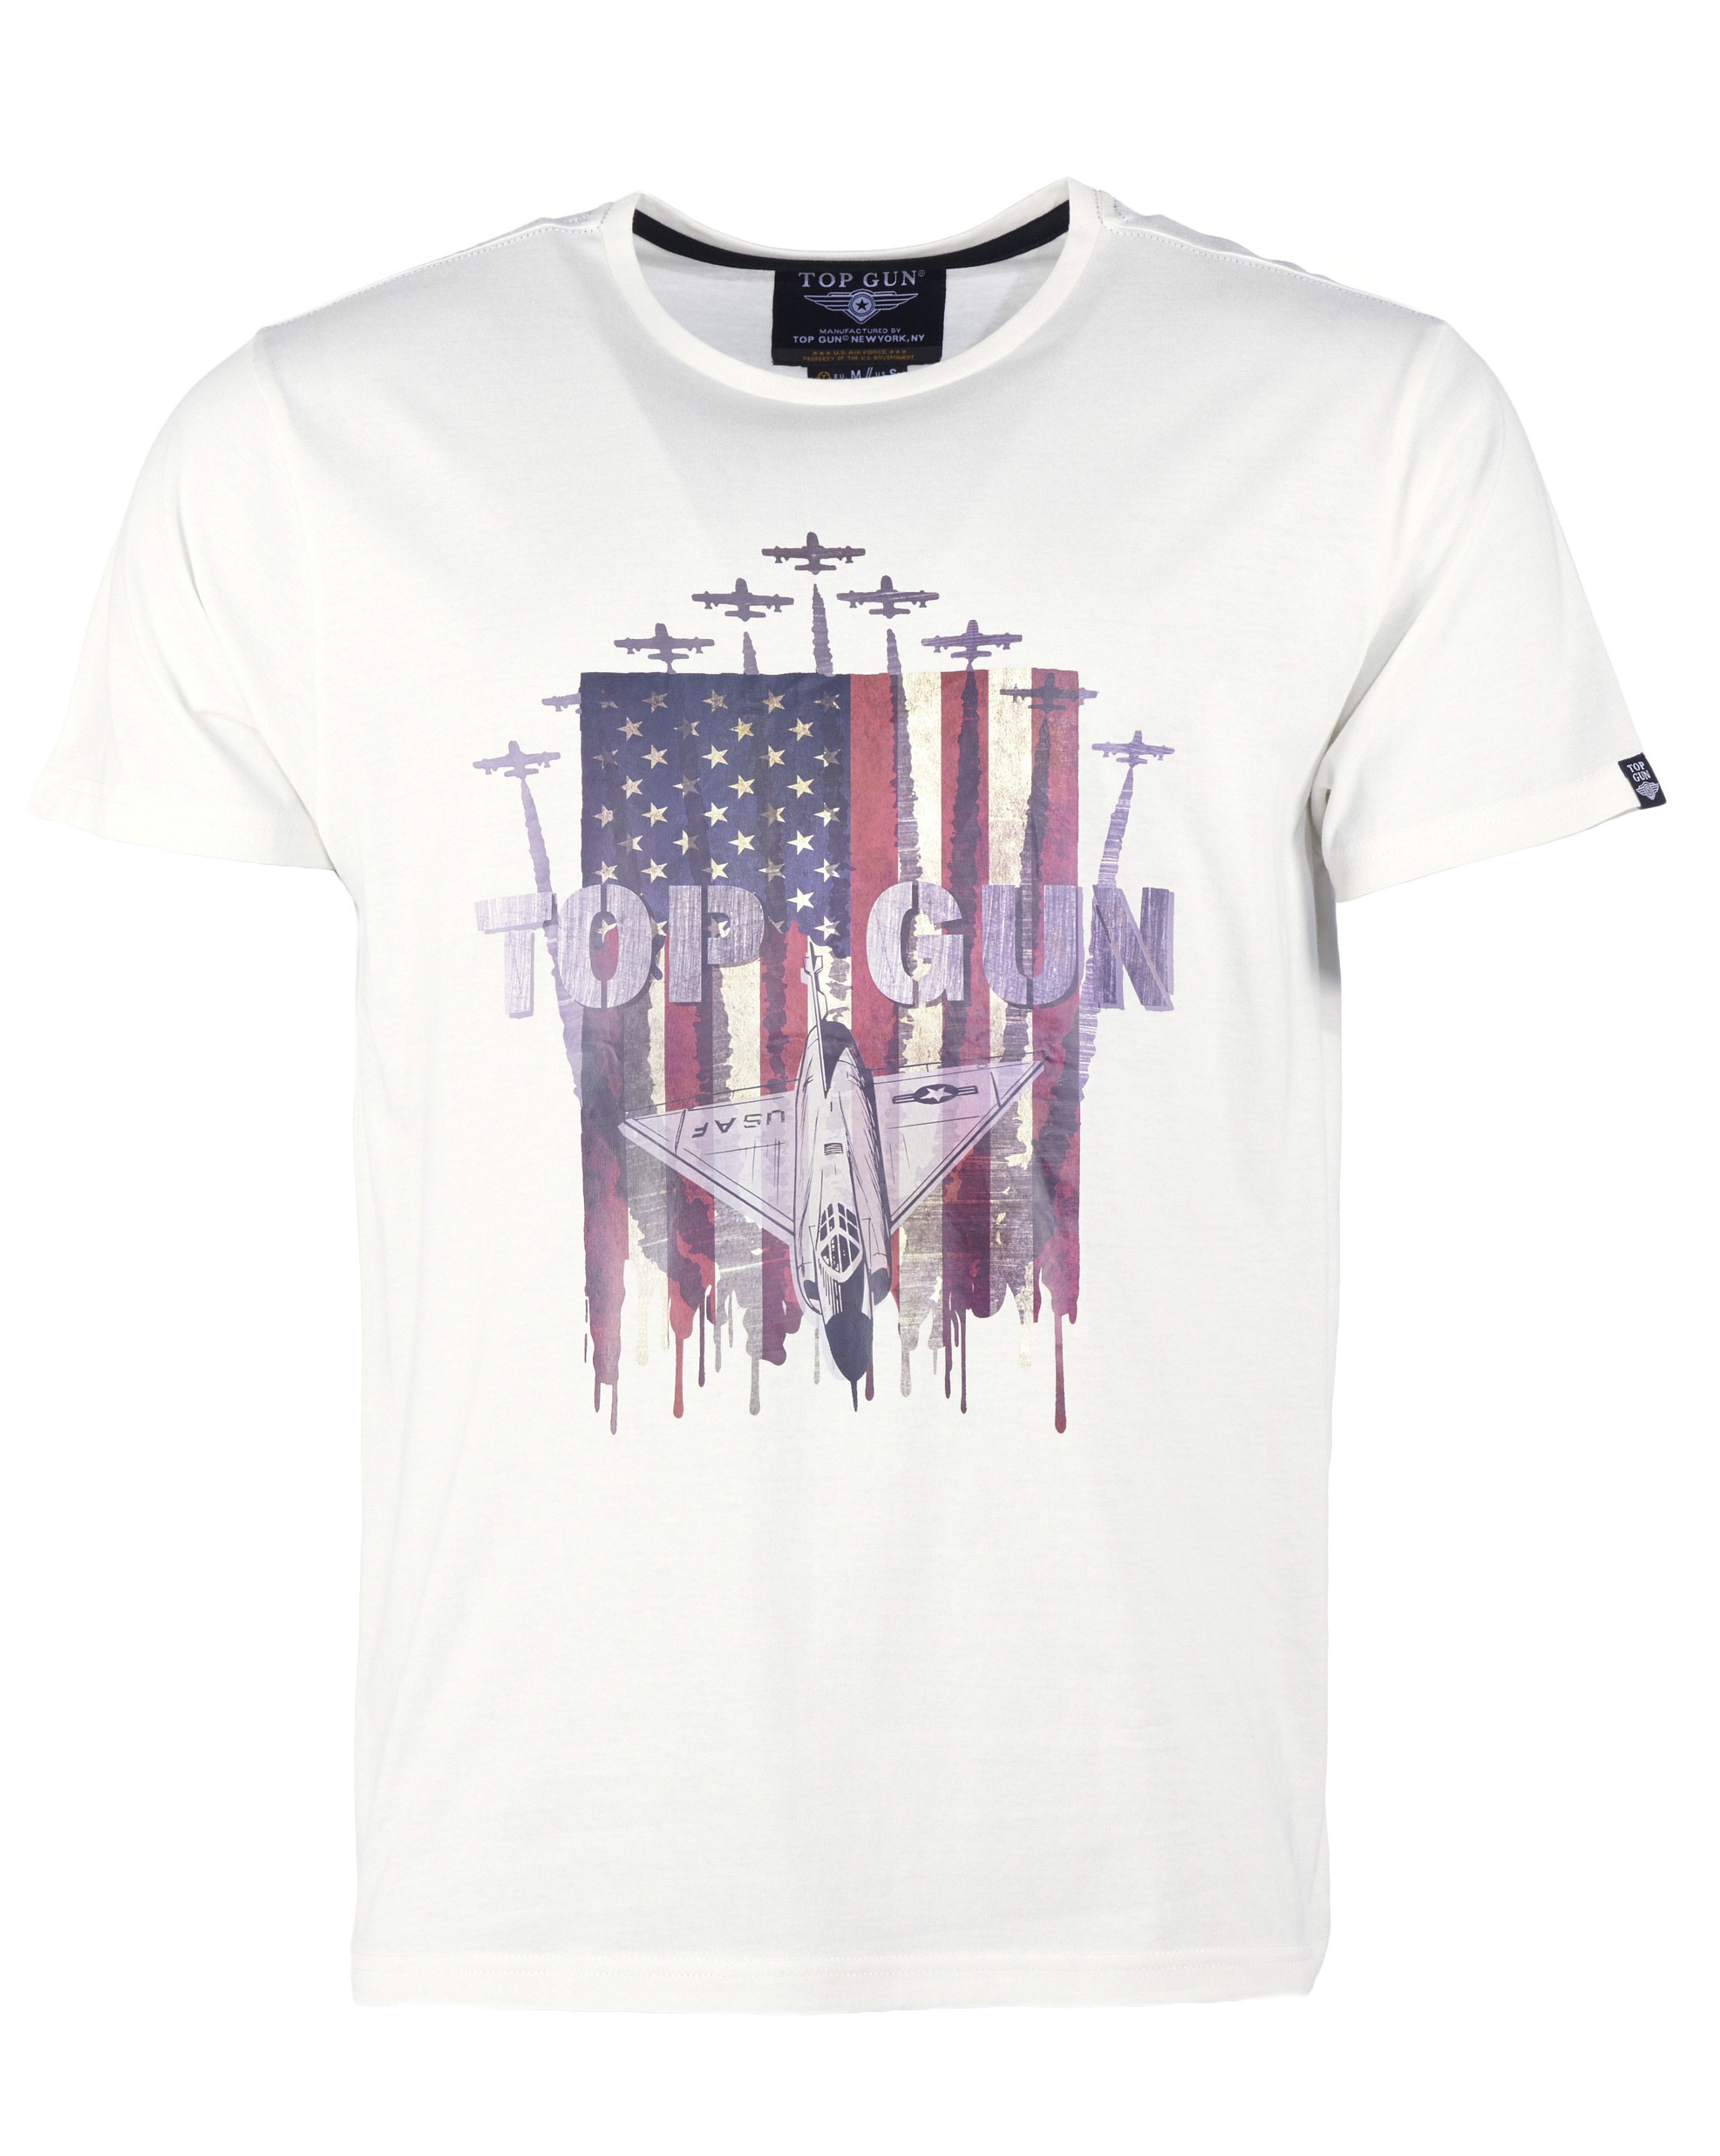 OTTO online TOP »T-Shirt T-Shirt TG20213021« GUN kaufen bei